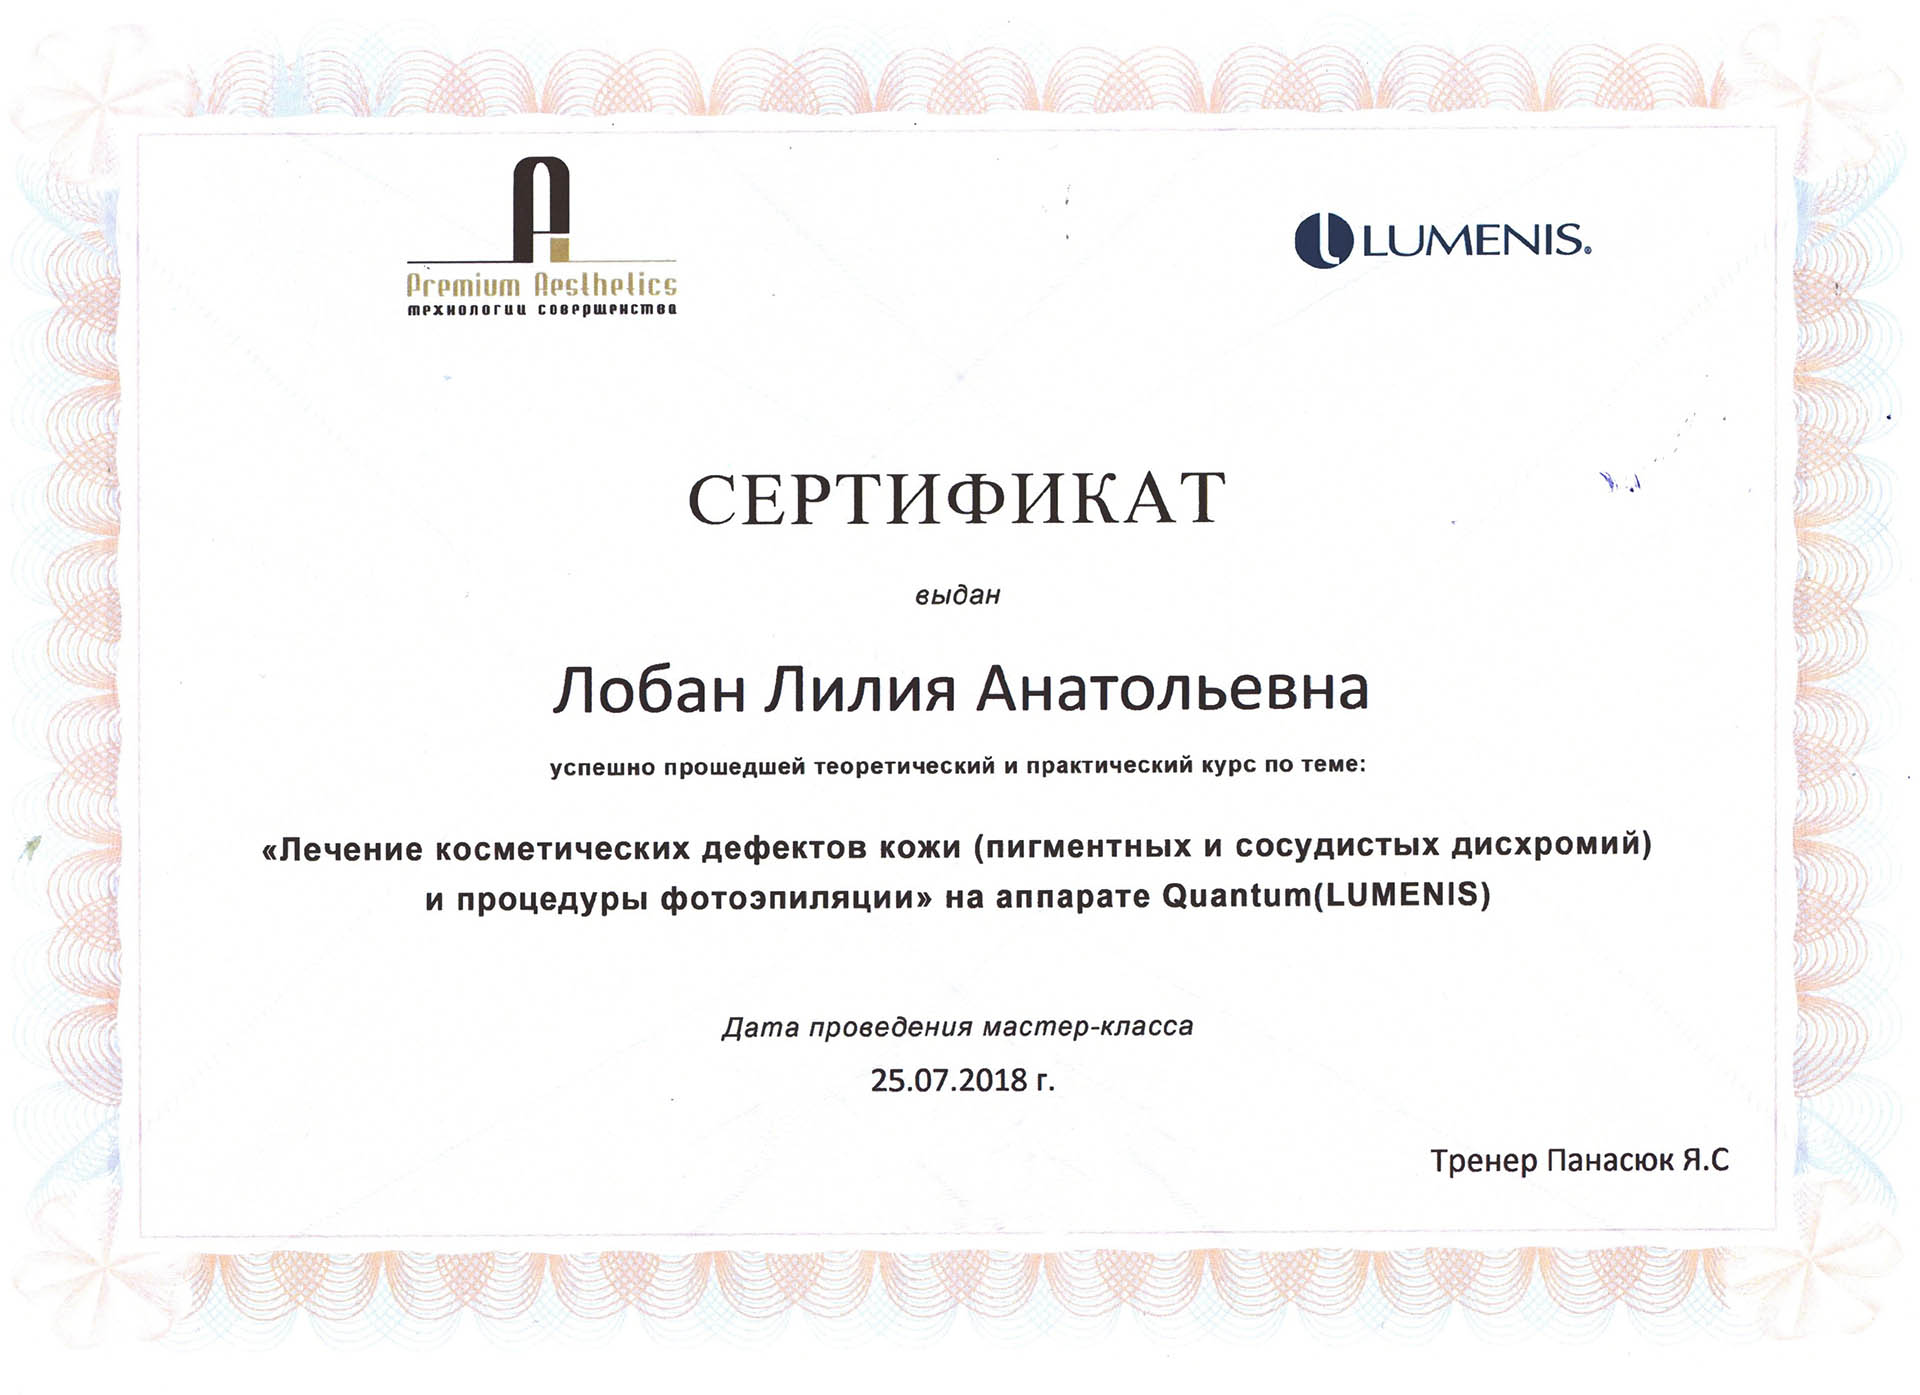 Сертификат — Курс «Лечение косметических дефектов кожи». Живоглазова Лилия Анатольевна